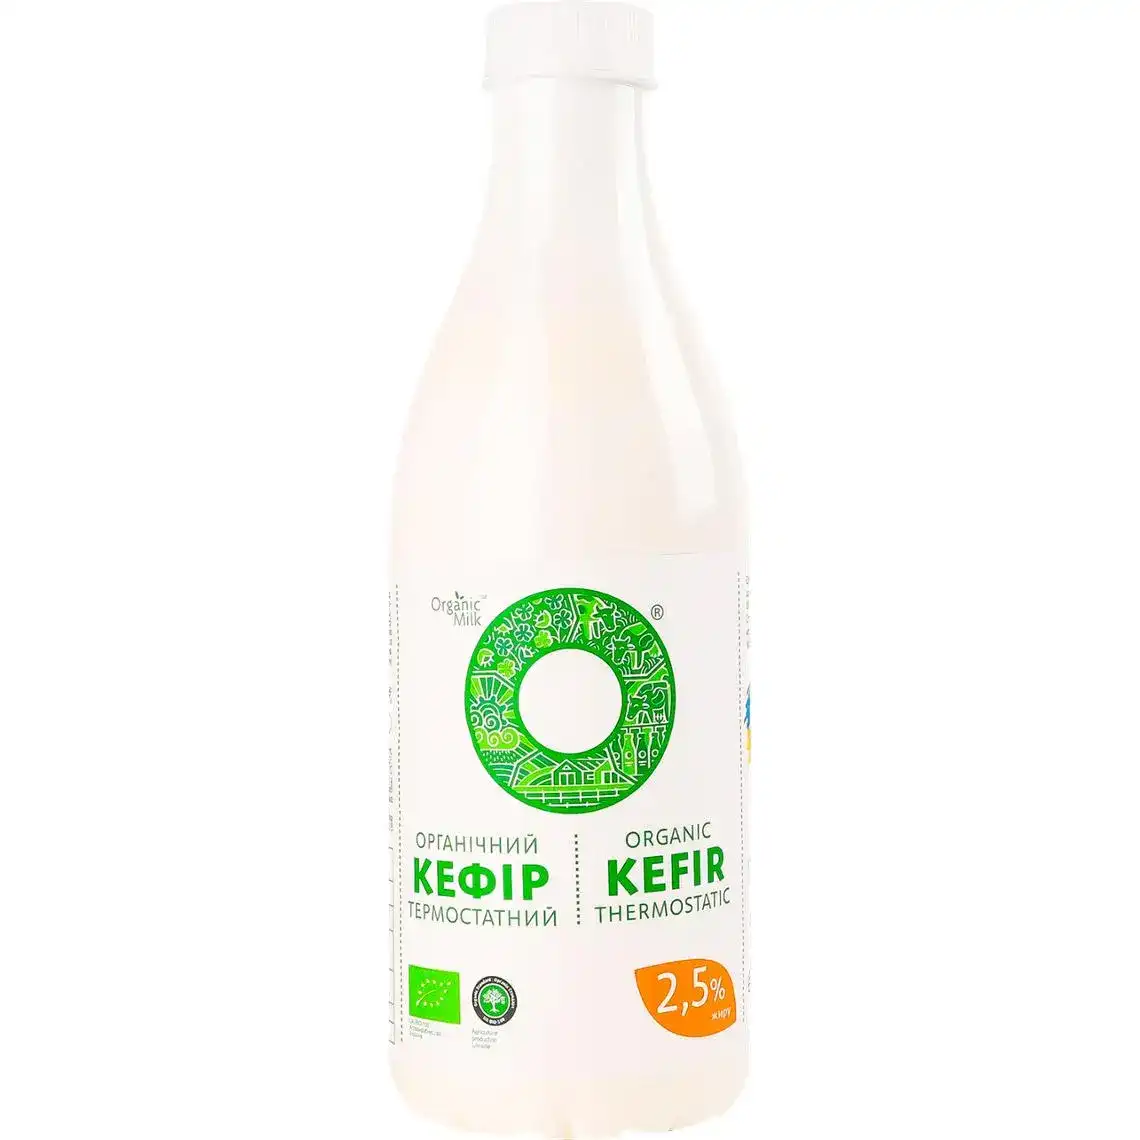 Кефір Organic Milk 2.5% термостатний 900 г